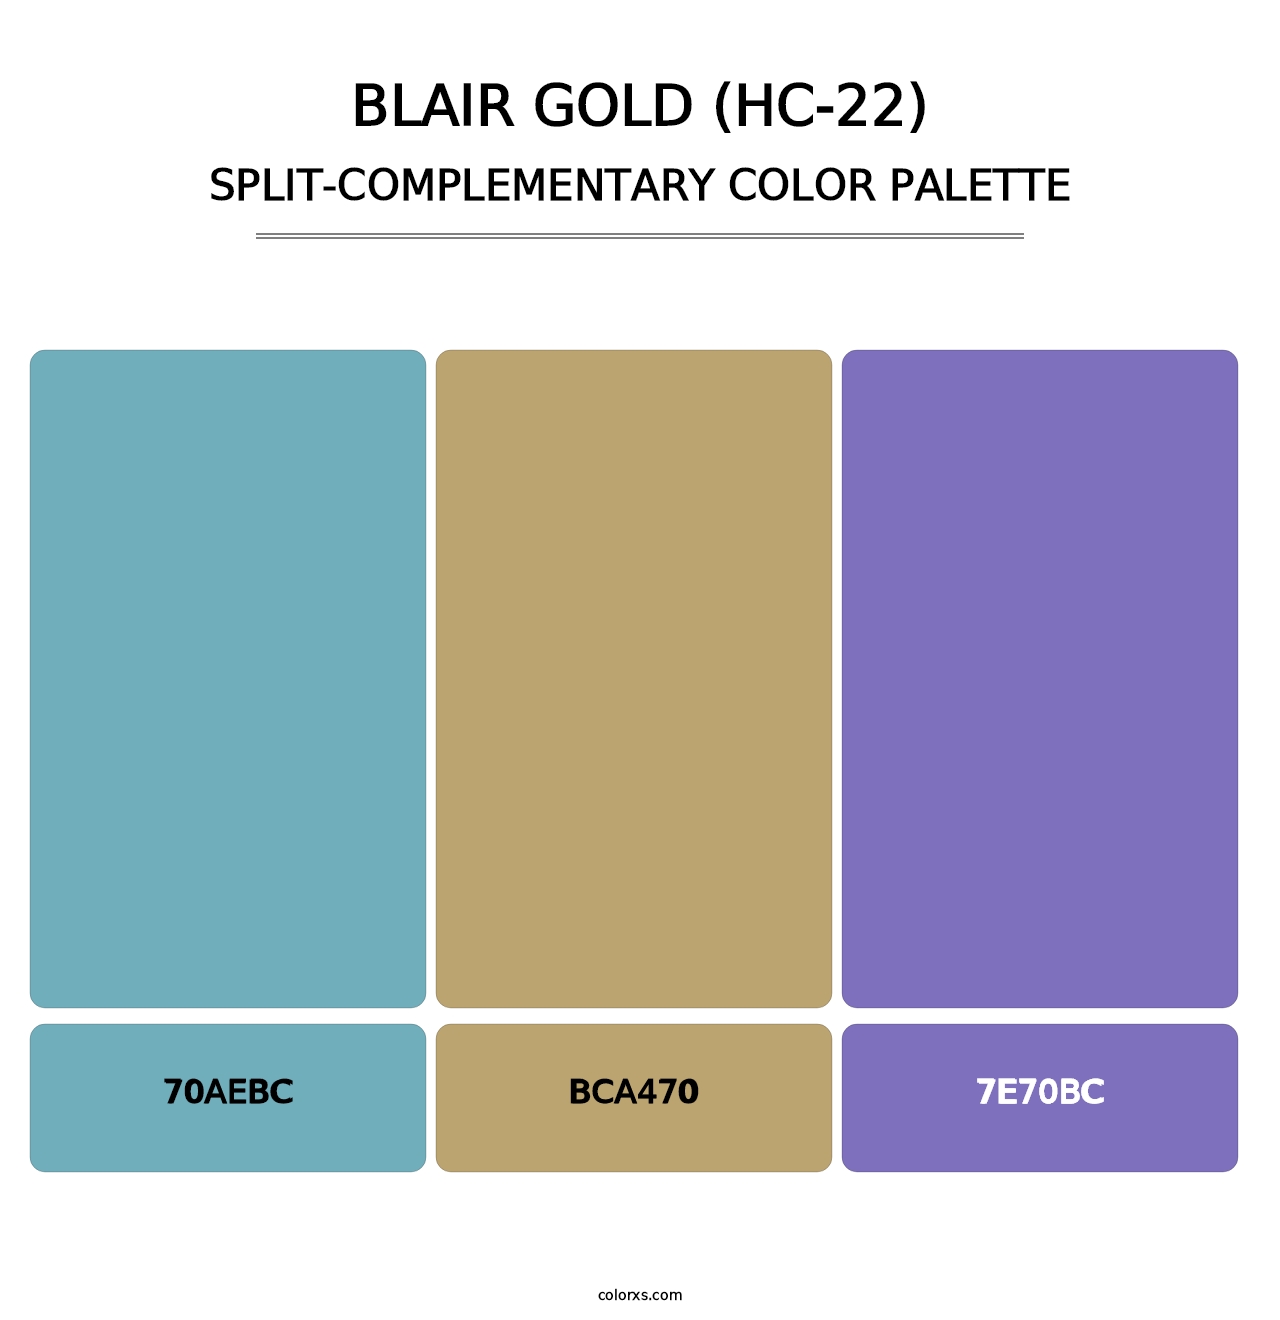 Blair Gold (HC-22) - Split-Complementary Color Palette